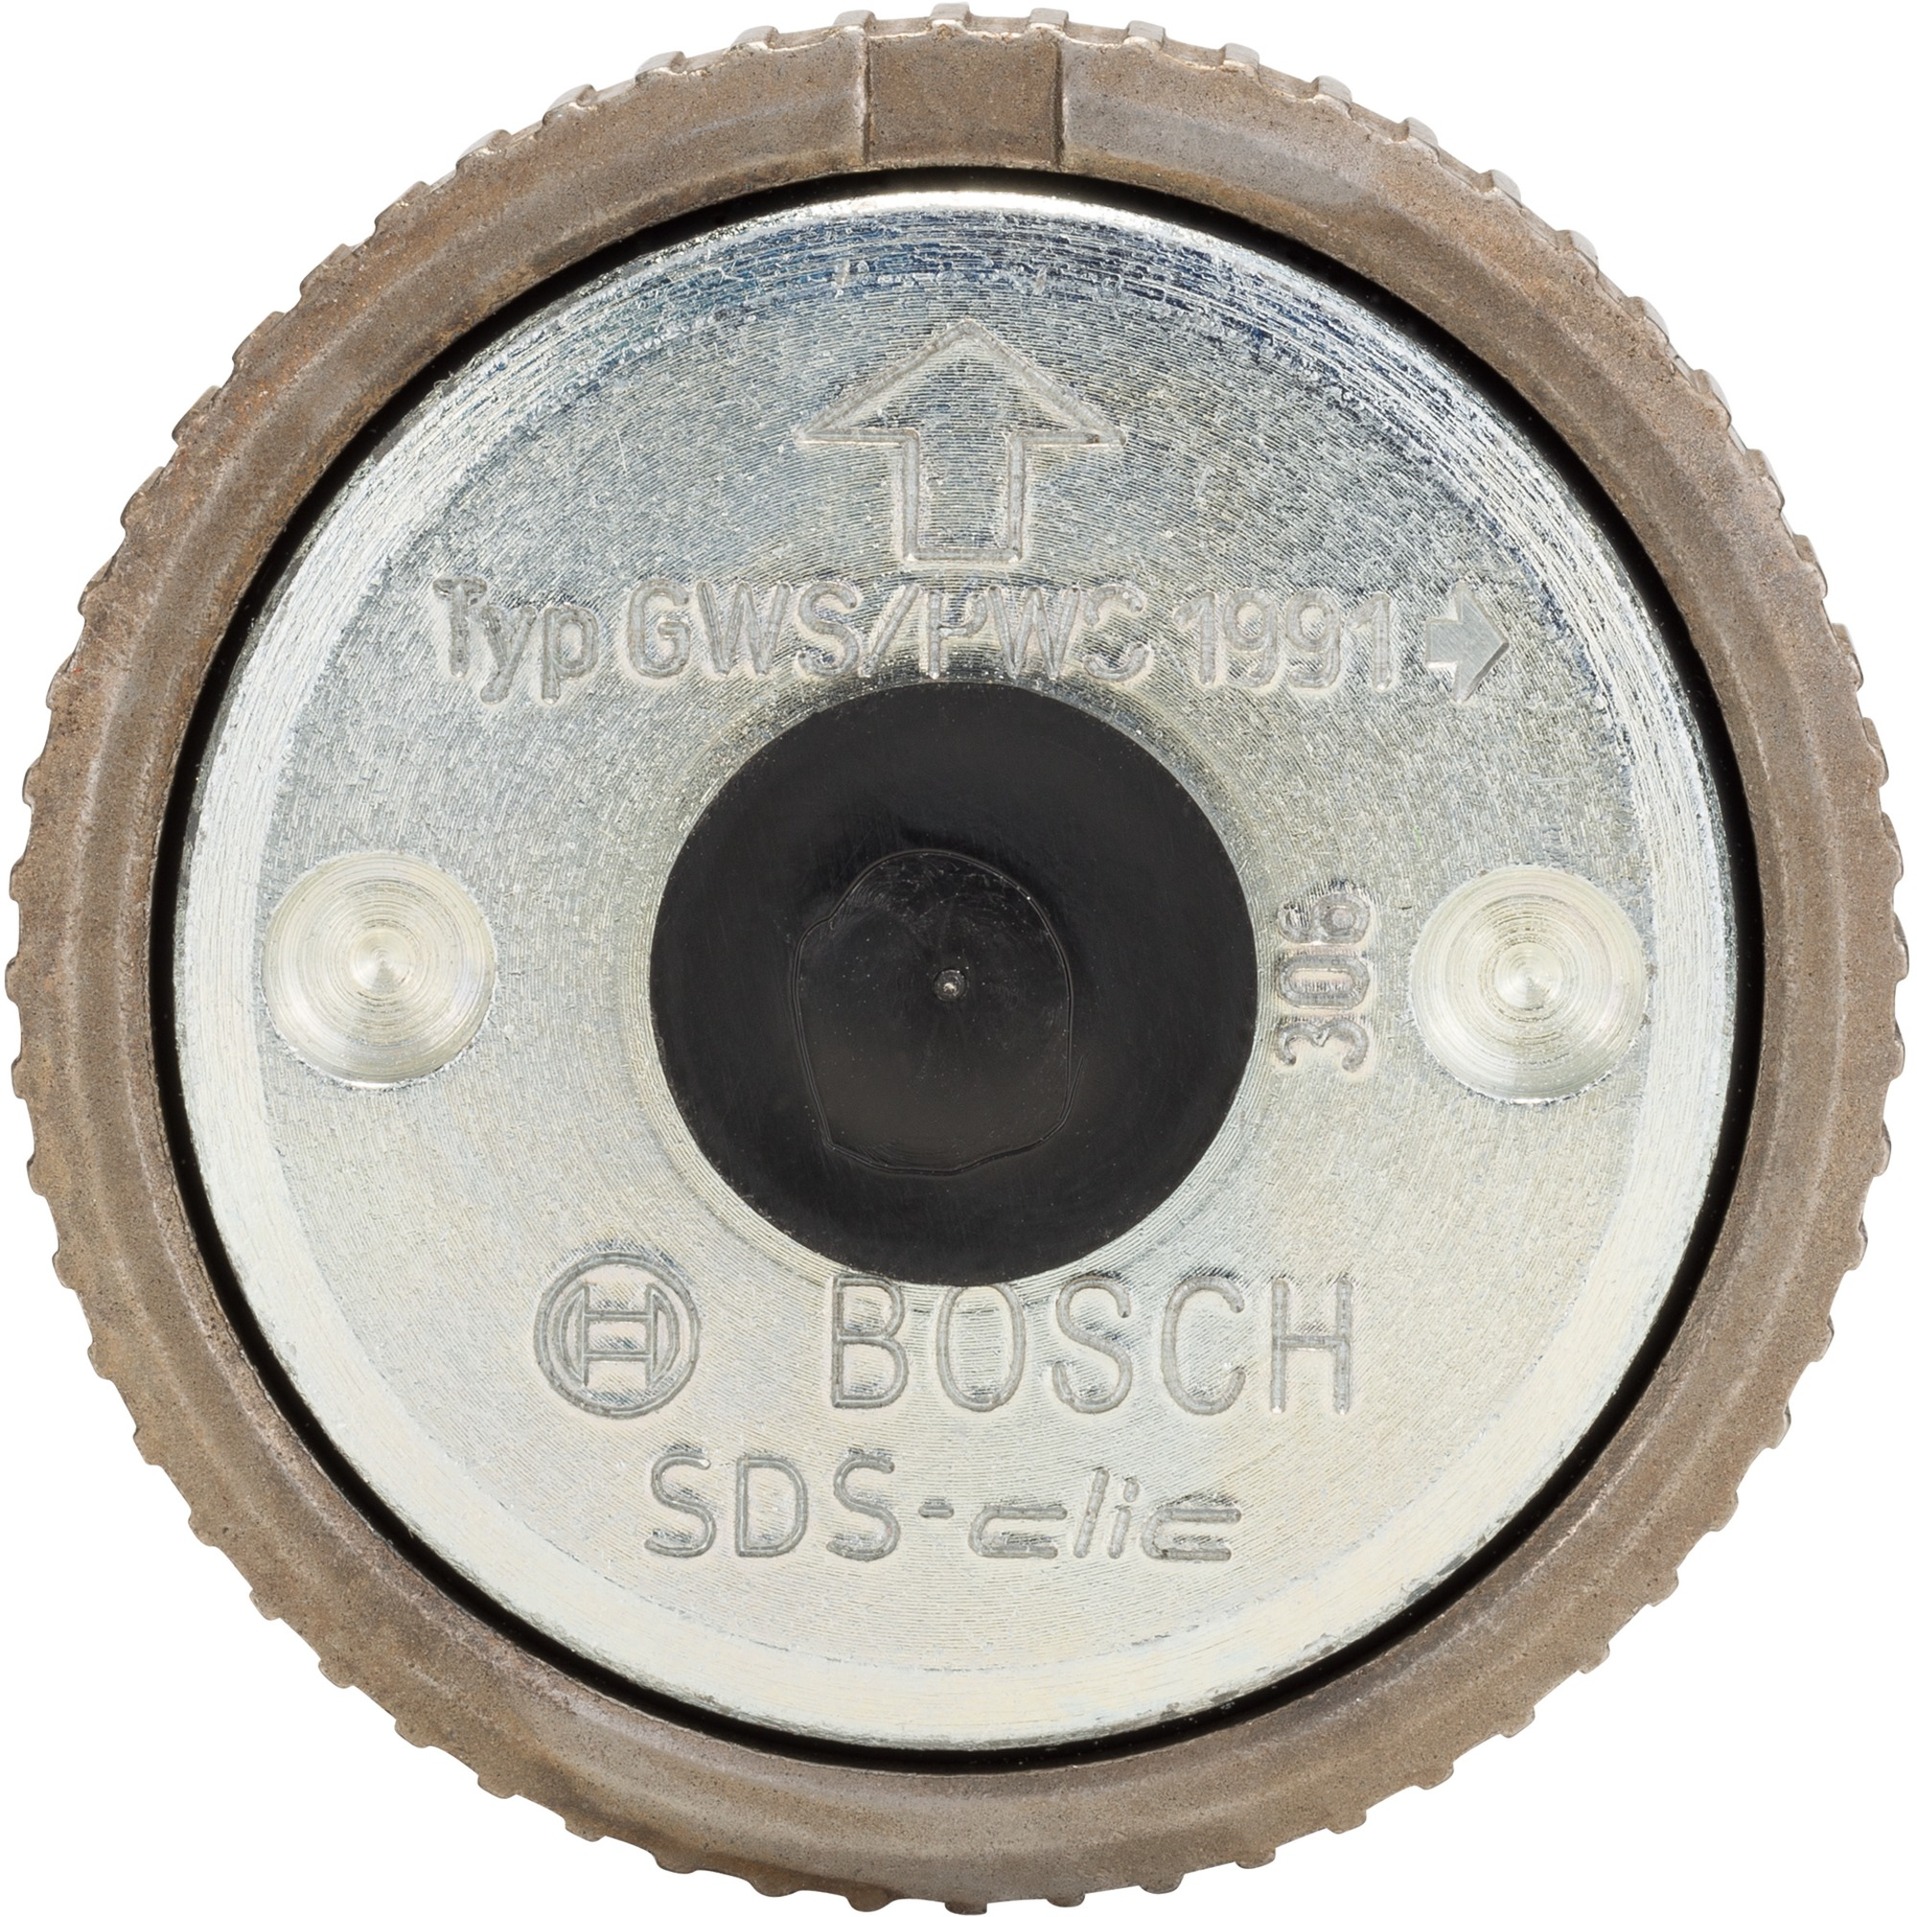 SDS-clic Schnellspannmutter M14, Aufsatz von Bosch